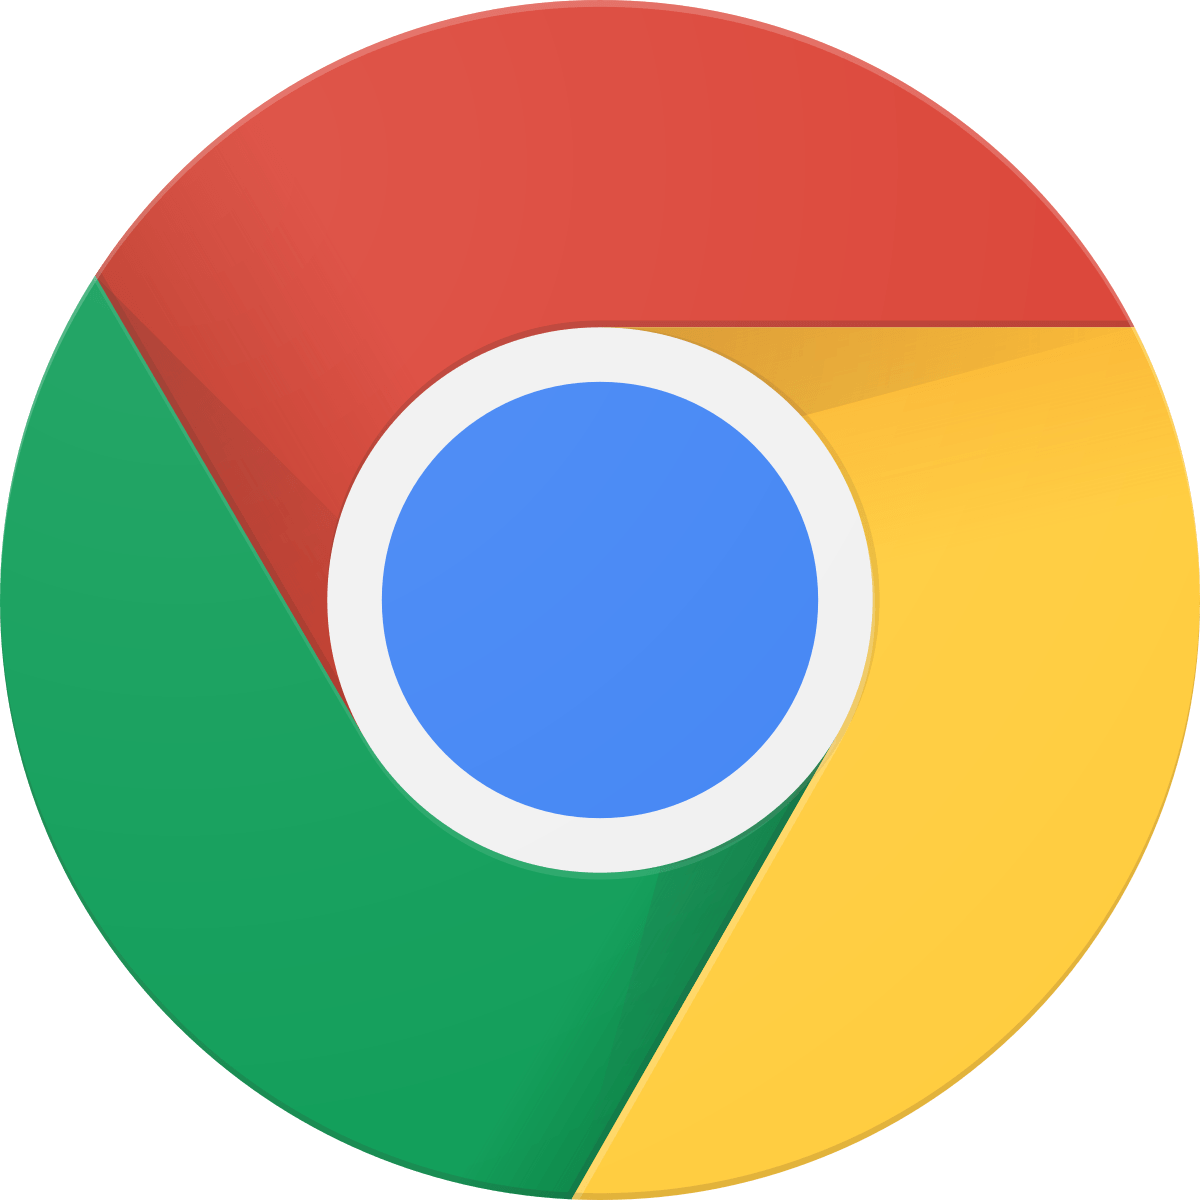 Chrome Browser Logo - Google Chrome